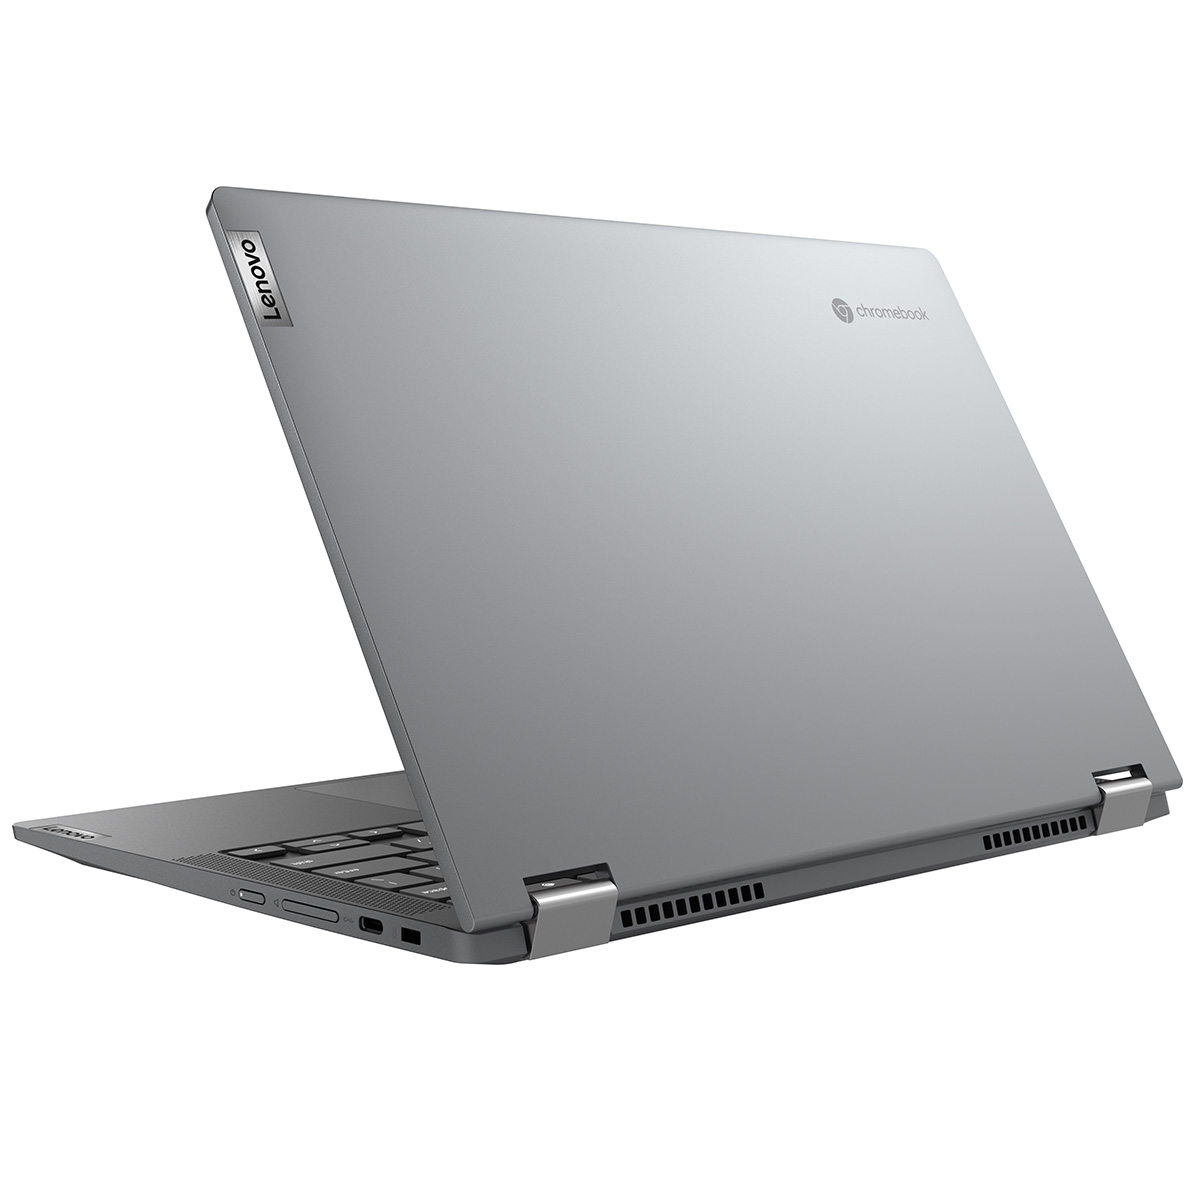 限定特典付き Chromebook 新品 ノートパソコン IdeaPad Flex550i 13.3型 メモリ4GB タッチパネル対応